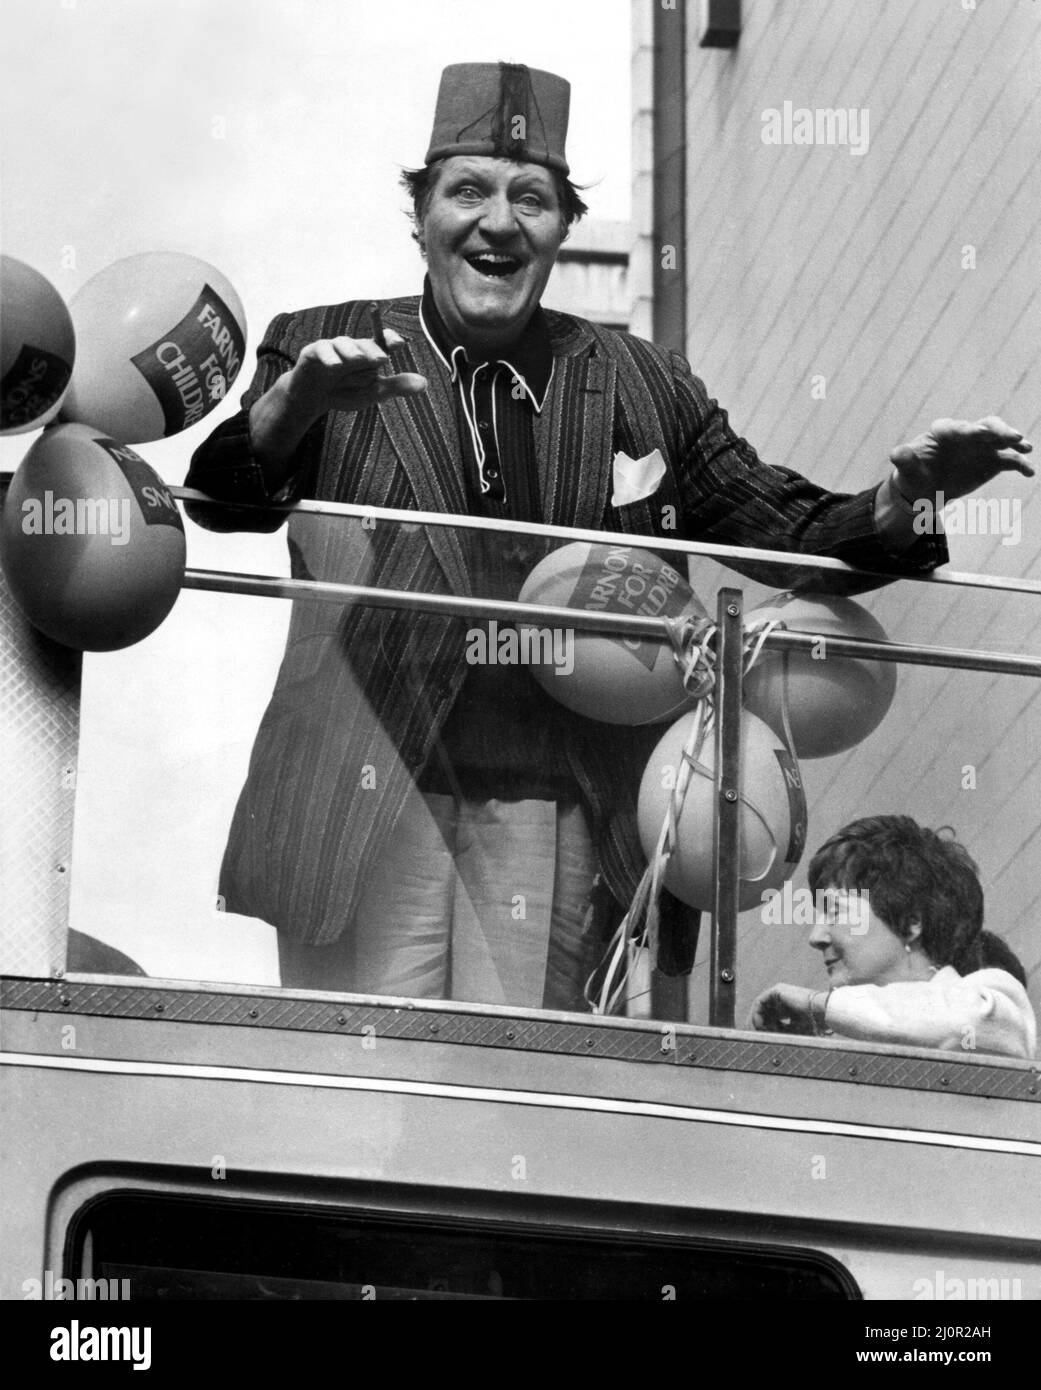 Der Komiker Tommy Cooper machte eine offene Busreise durch die Straßen von Newcastle. Die Reise wurde vom Kaufhaus Farnons organisiert, dessen Verkauf eröffnet werden sollte. Eine traditionelle Jazzband ritt mit ihm, um die Aufmerksamkeit der Menschen zu erregen. Dann überreichte Tommy den Gewinnern im Store Preise und signierte Autogramme für seine Fans - einfach so!. 2.. April 1983 Stockfoto